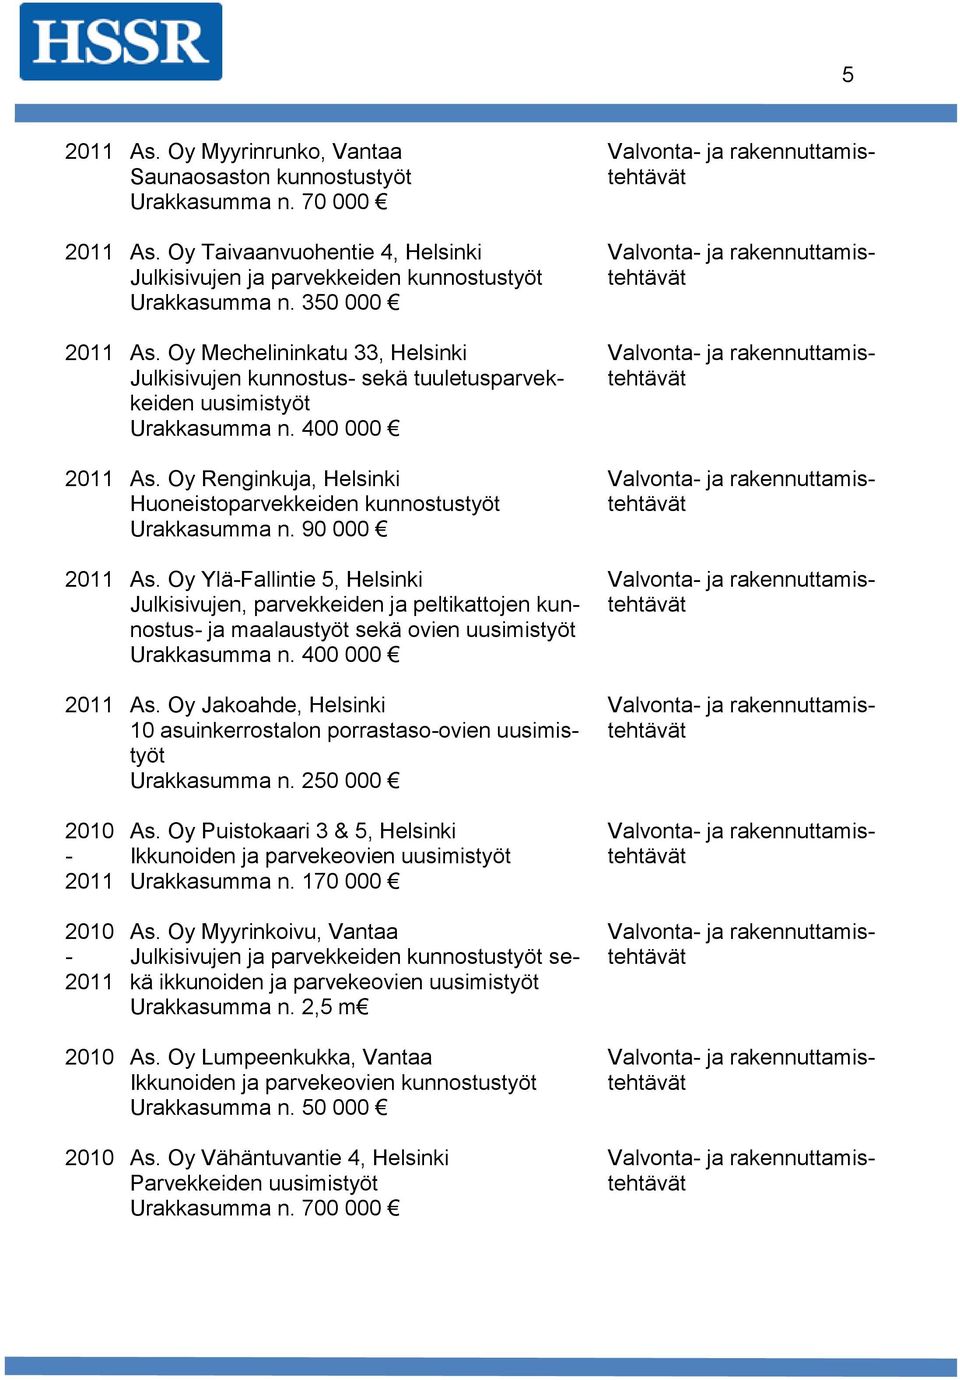 Oy YläFallintie 5, Helsinki Julkisivujen, parvekkeiden ja peltikattojen kunnostus ja maalaustyöt sekä ovien uusimistyöt 2011 As.